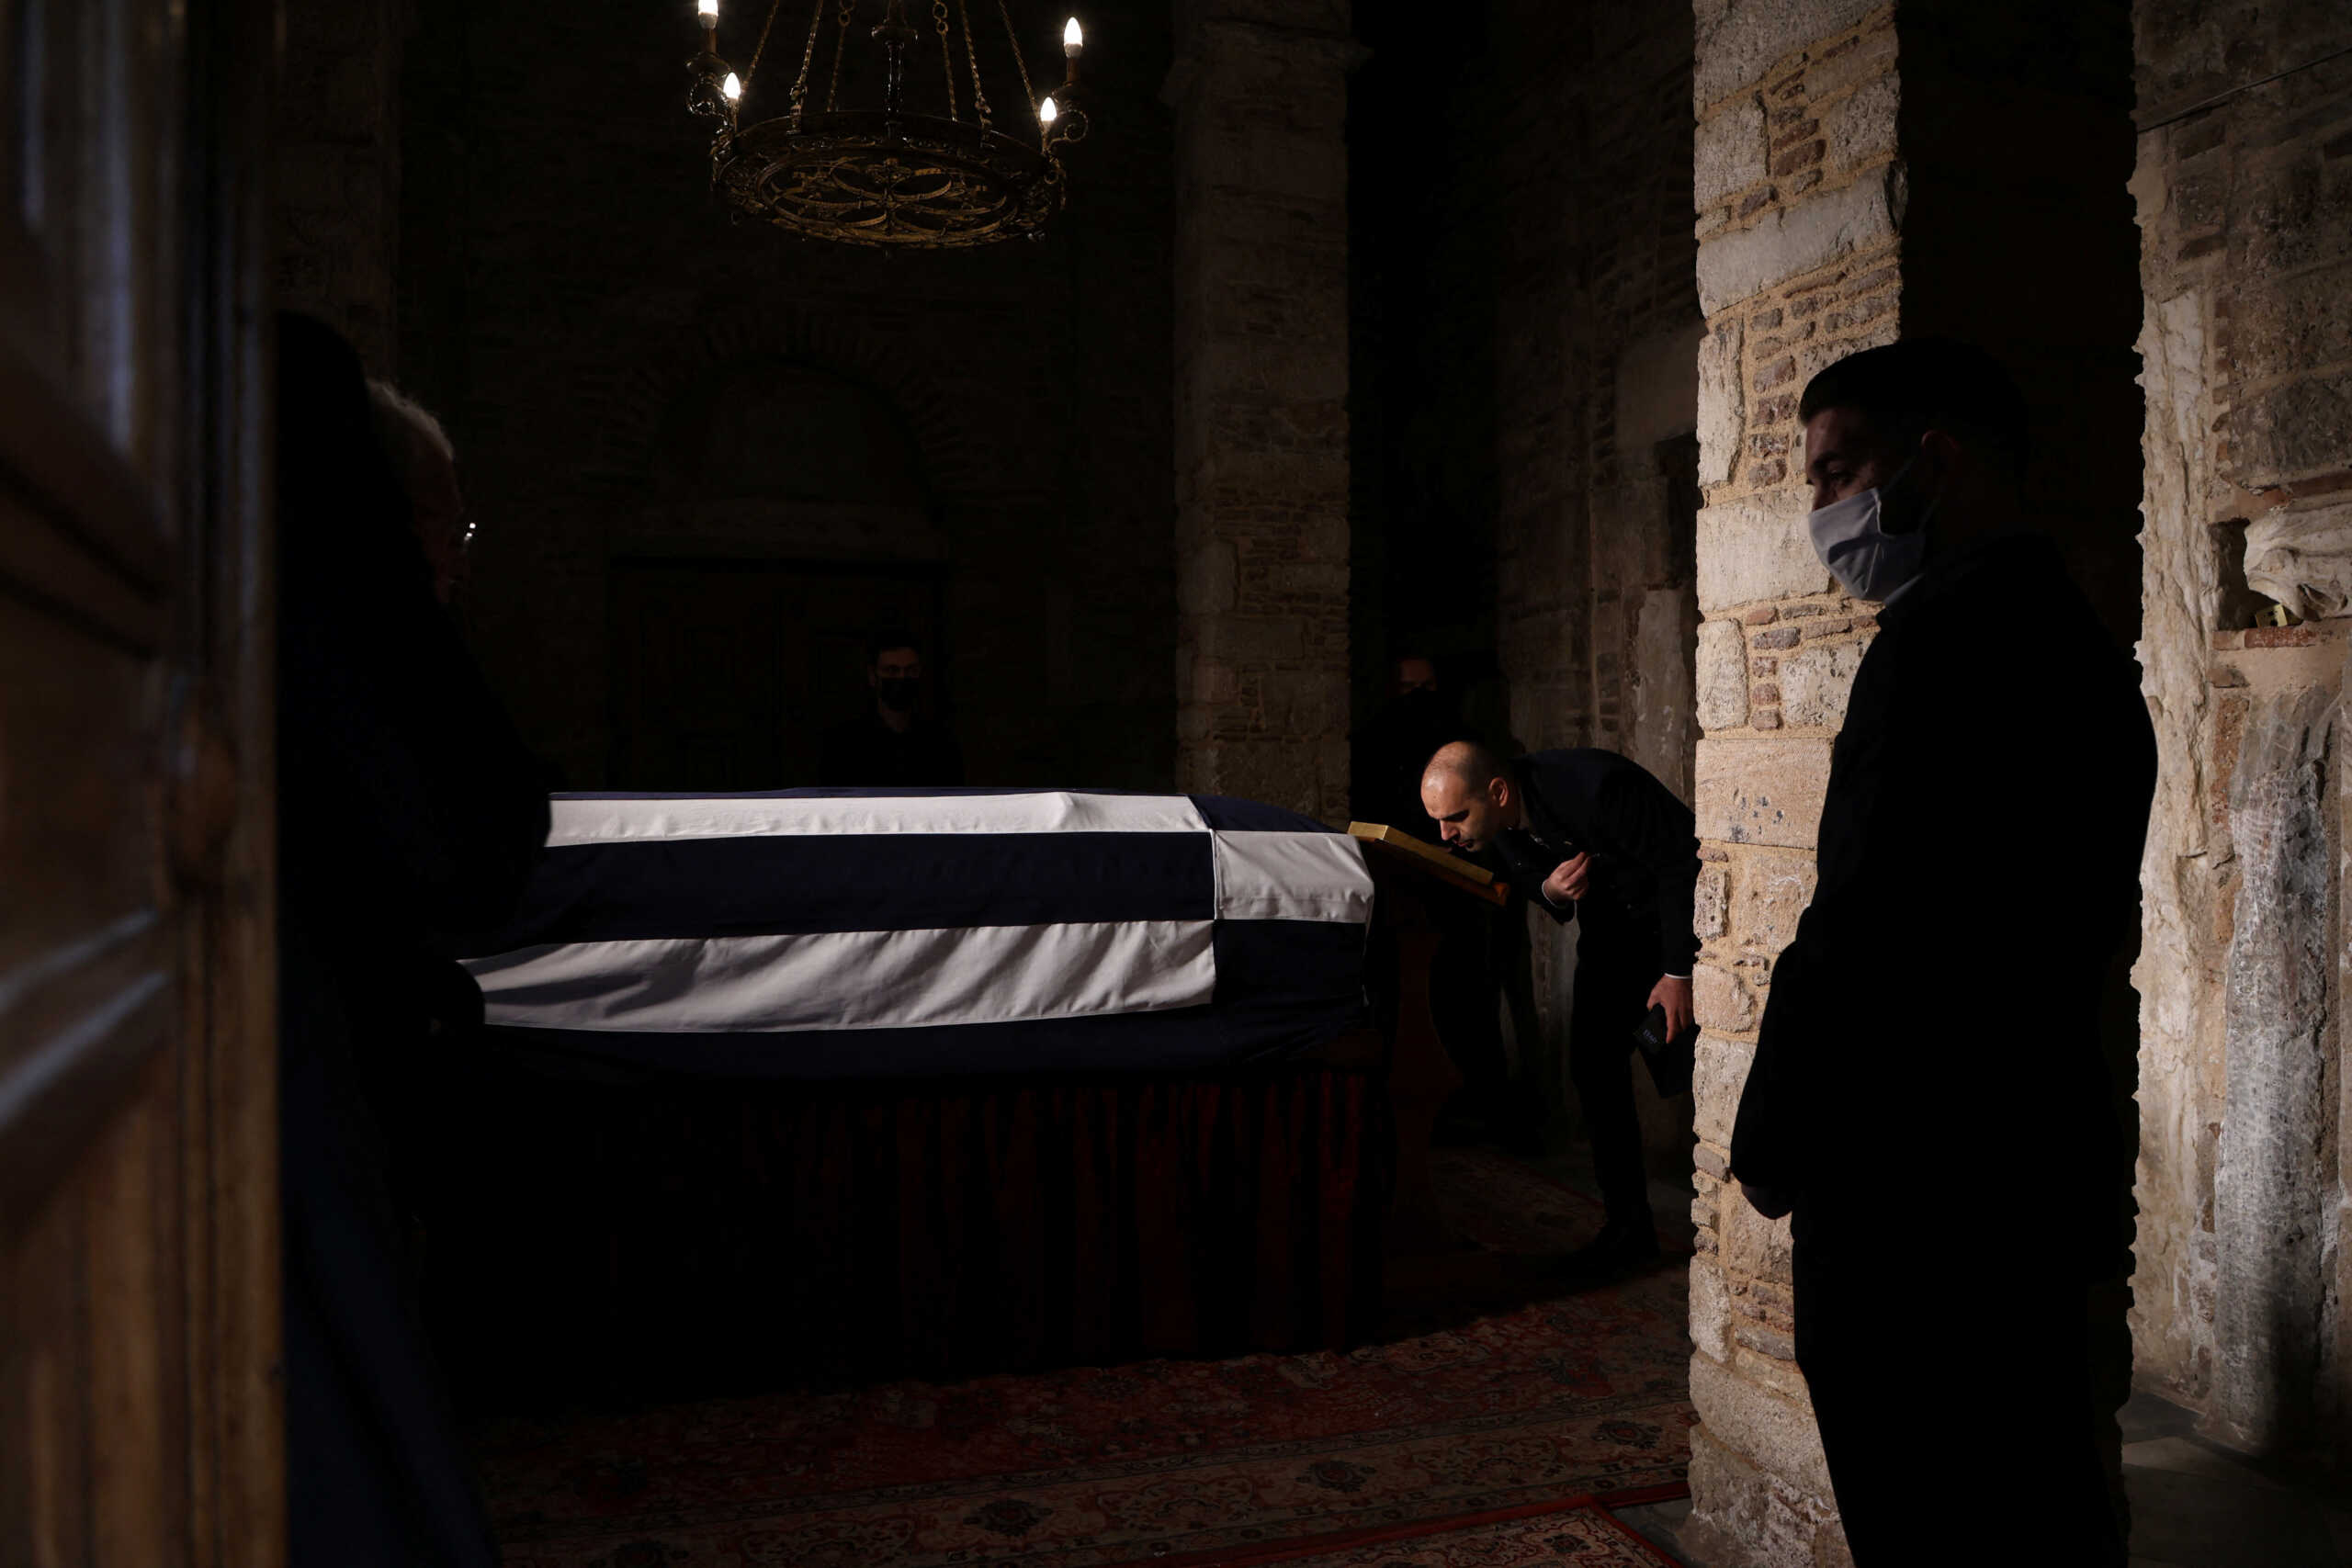 Κηδεία τέως βασιλιά Κωνσταντίνου: Εικόνες μέσα από το παρεκκλήσι όπου τίθεται σε λαϊκό προσκύνημα η σορός